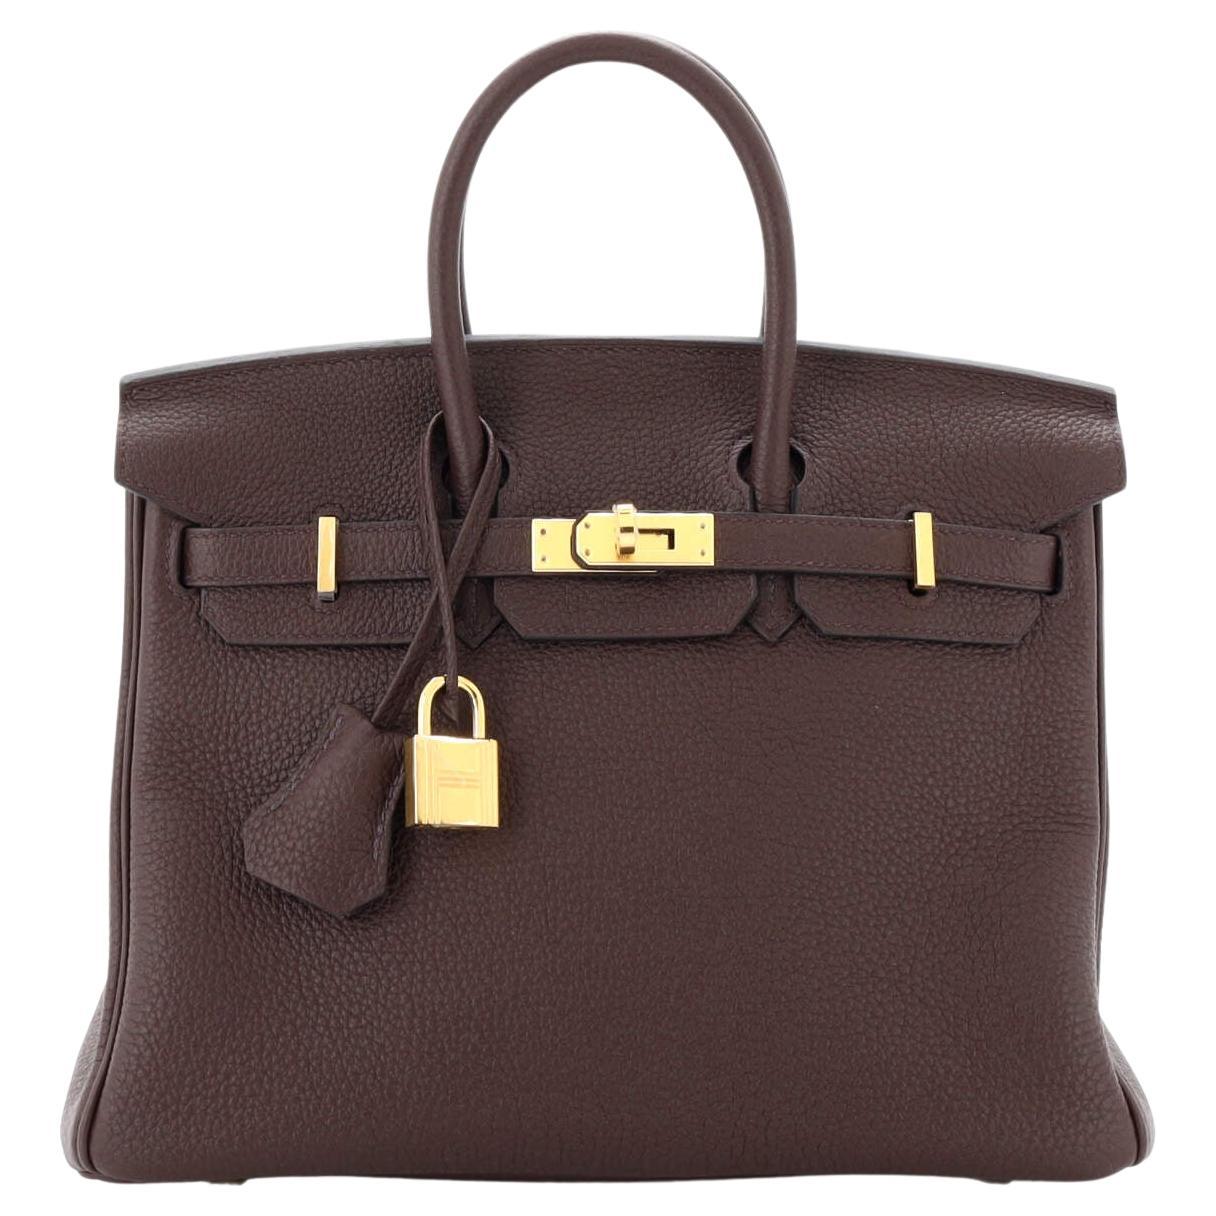 Hermes Birkin Handbag Rouge Sellier Togo with Gold Hardware 25